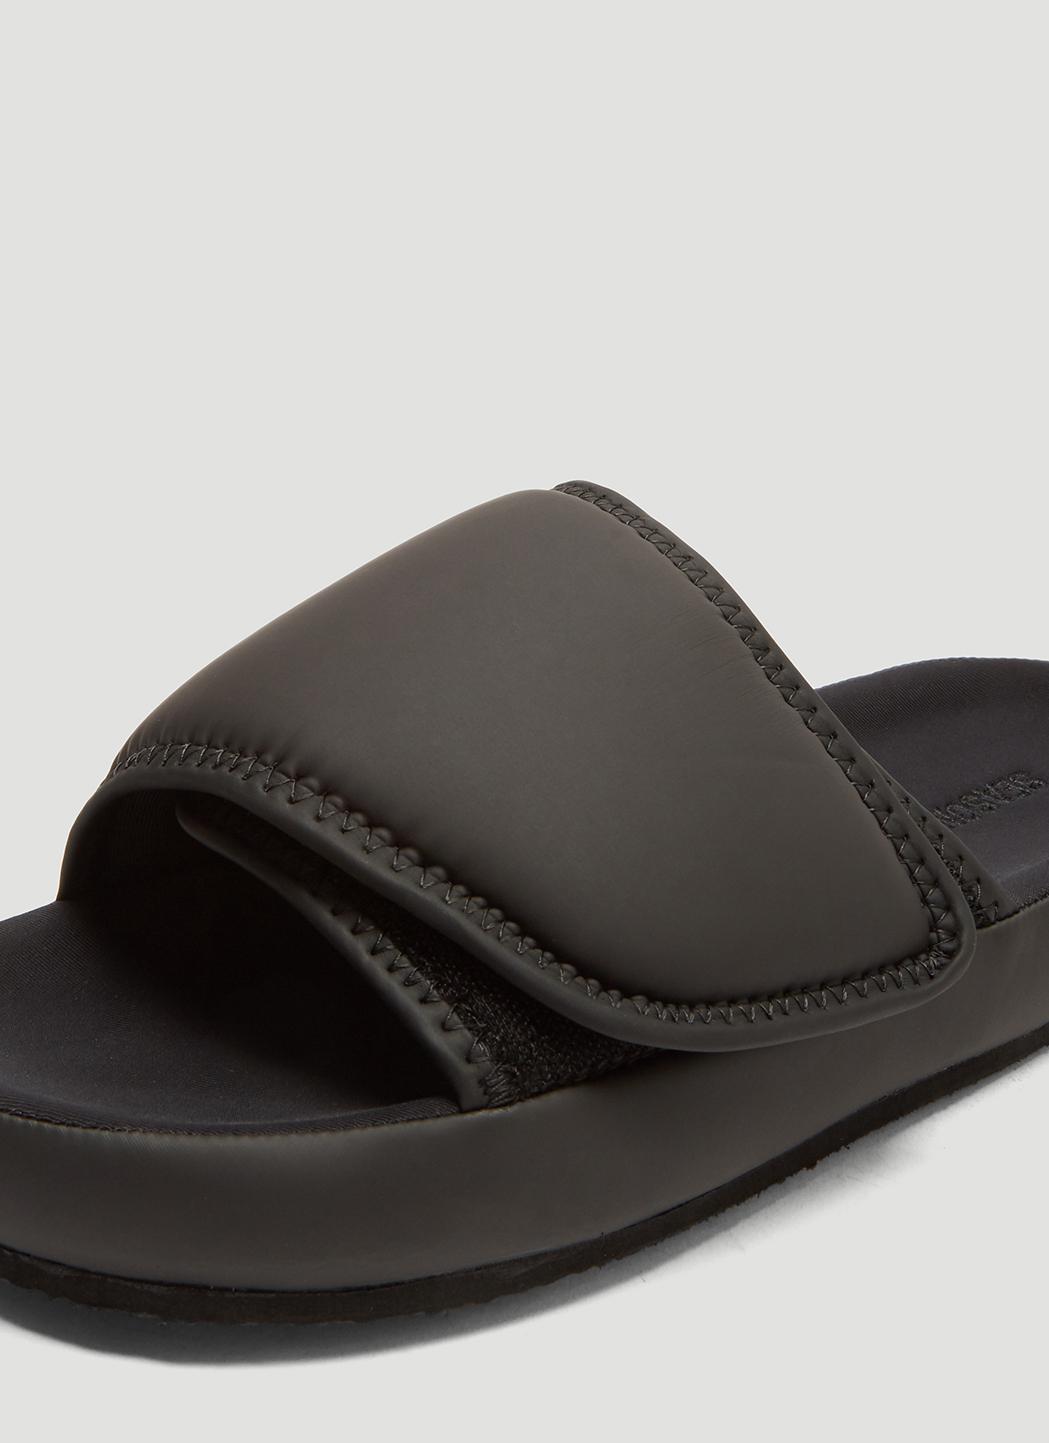 yeezy slippers black